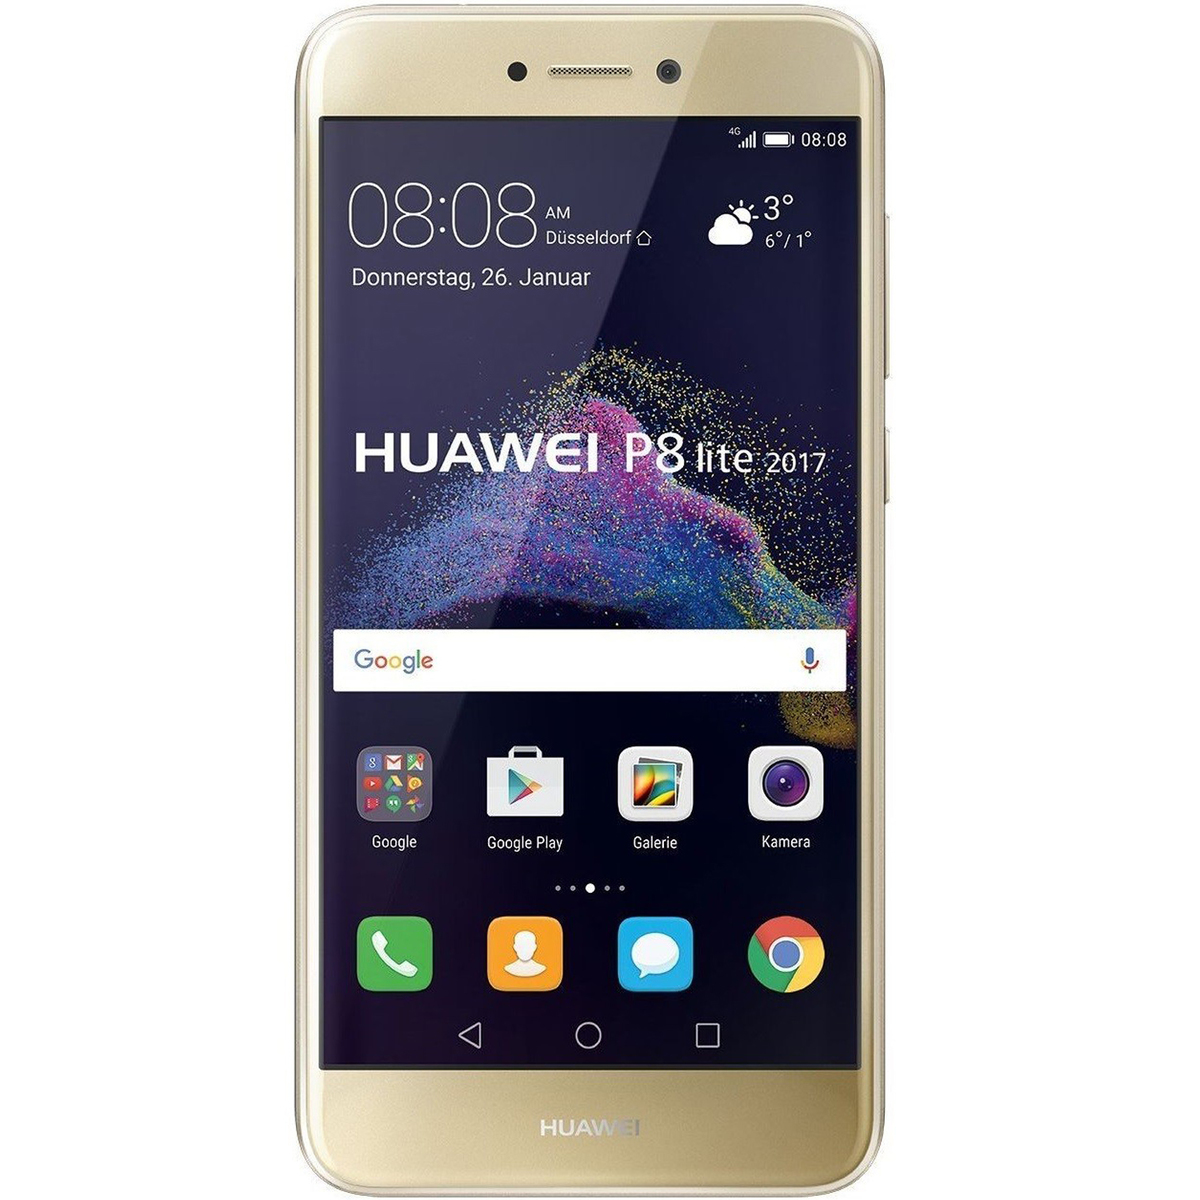 Dokter Aan het water Het kantoor Huawei P8 Lite 4G 16GB Gold | Smart Phones | Lulu Kuwait